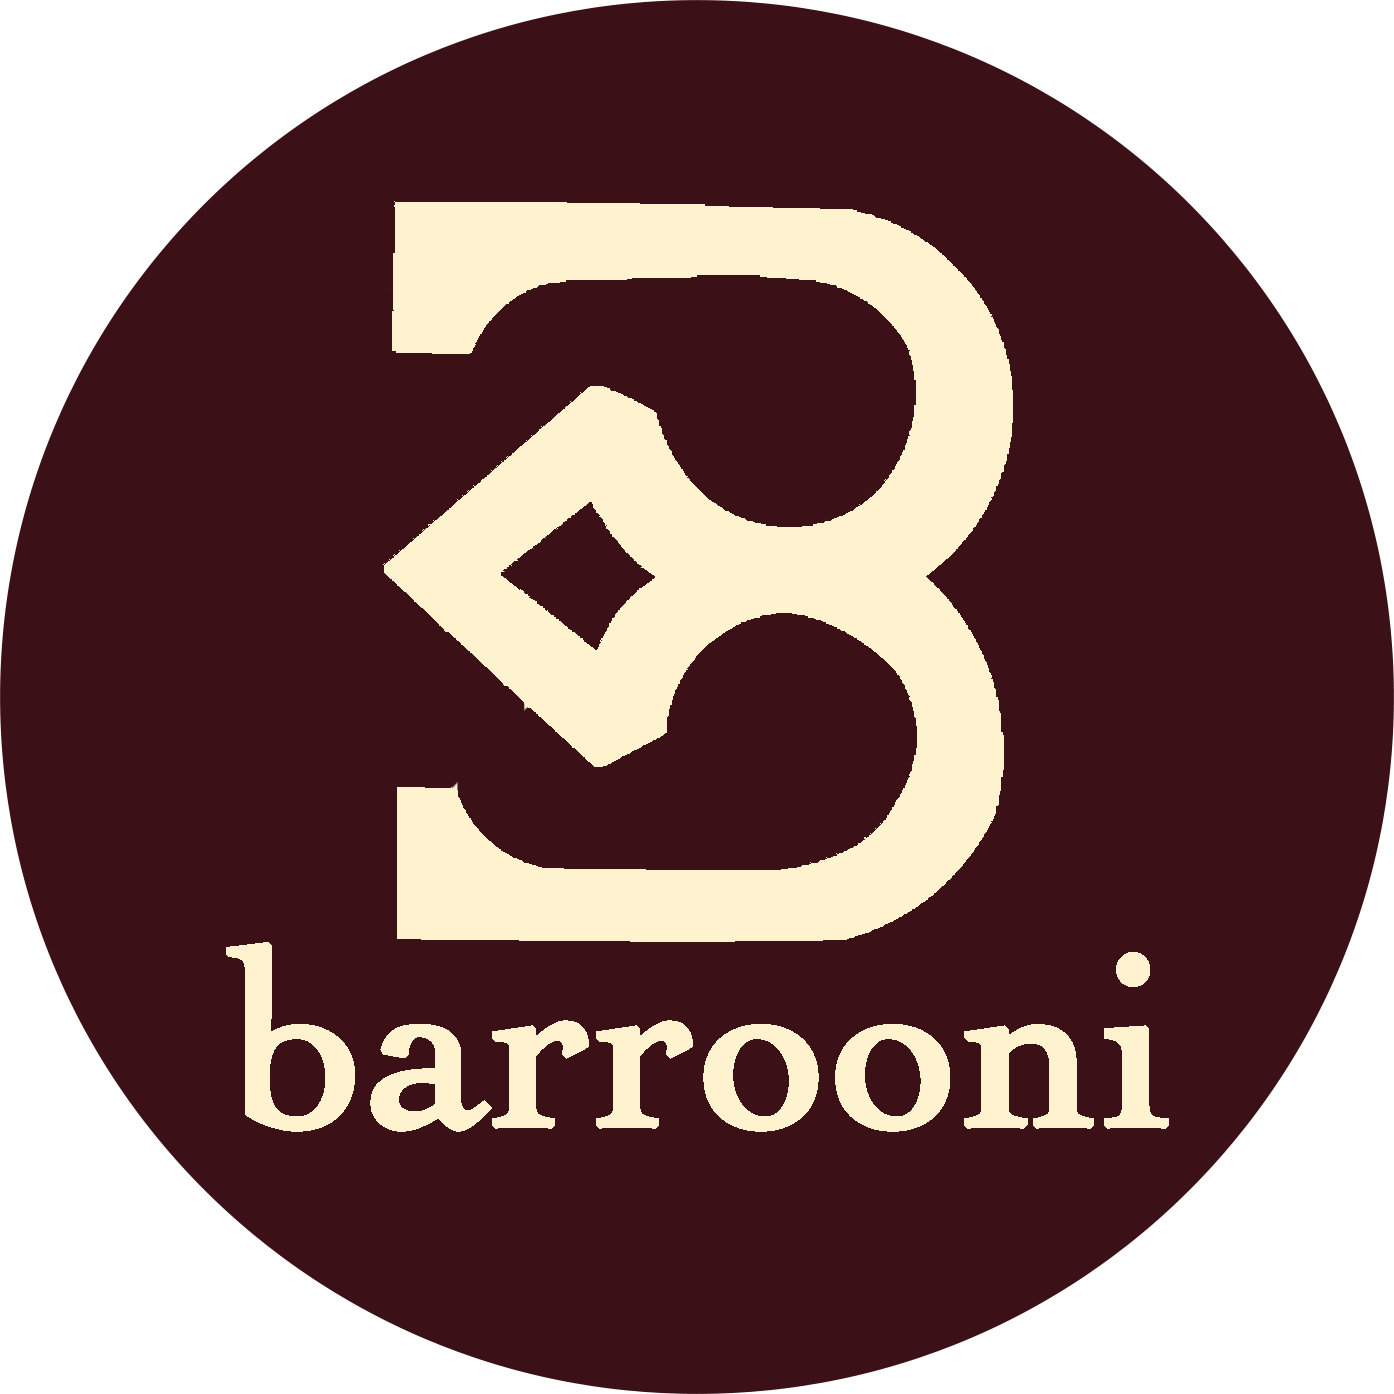 Barrooni